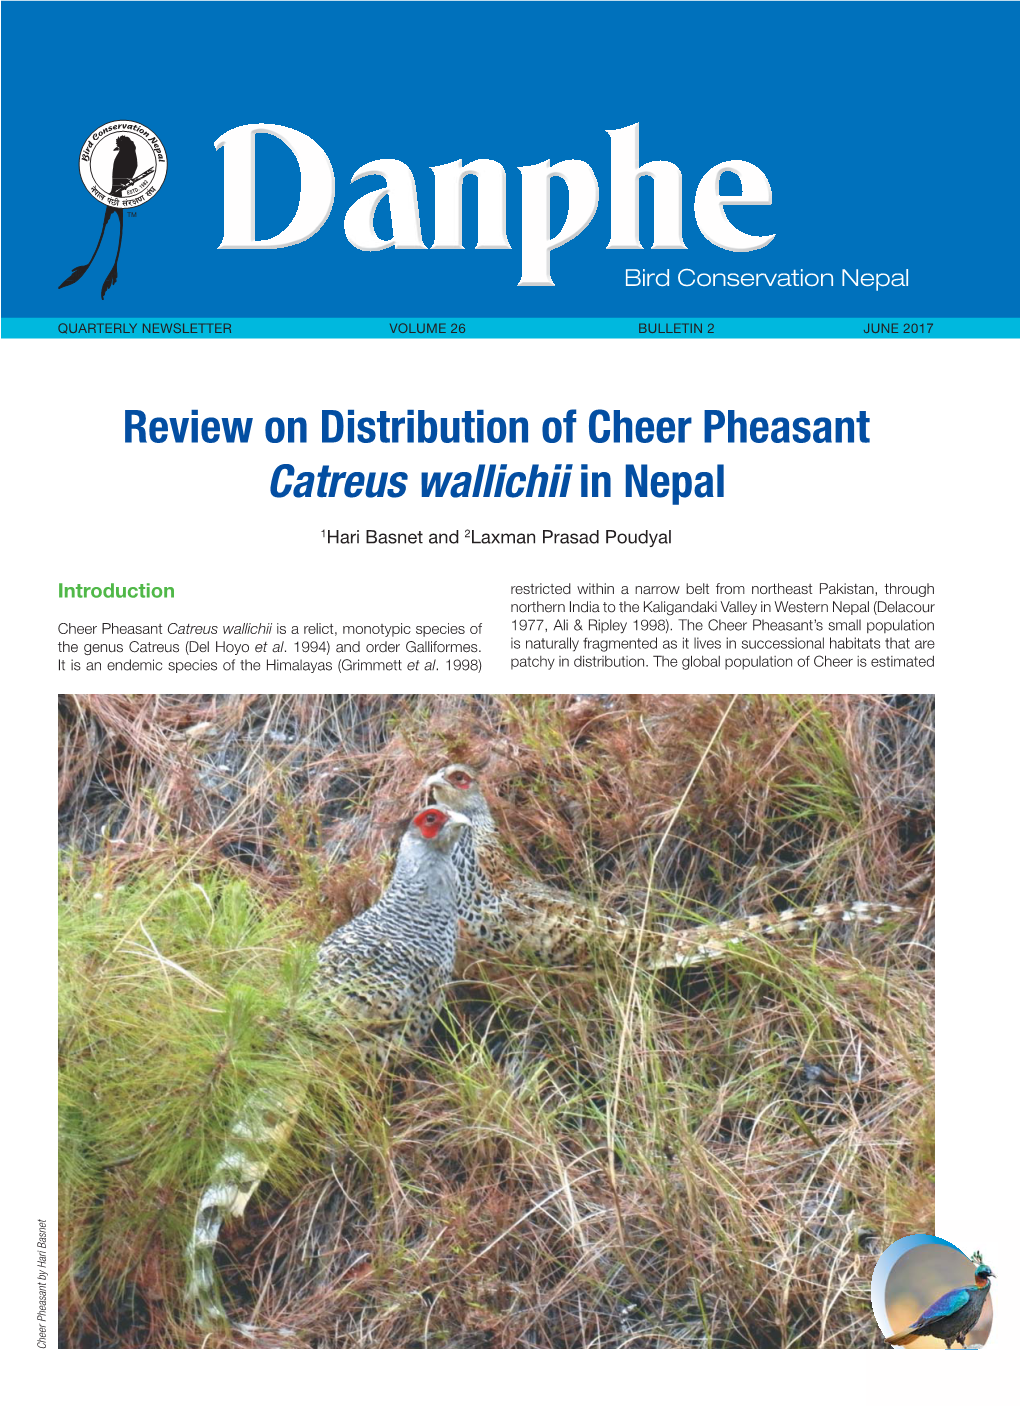 Danphe Newsletter